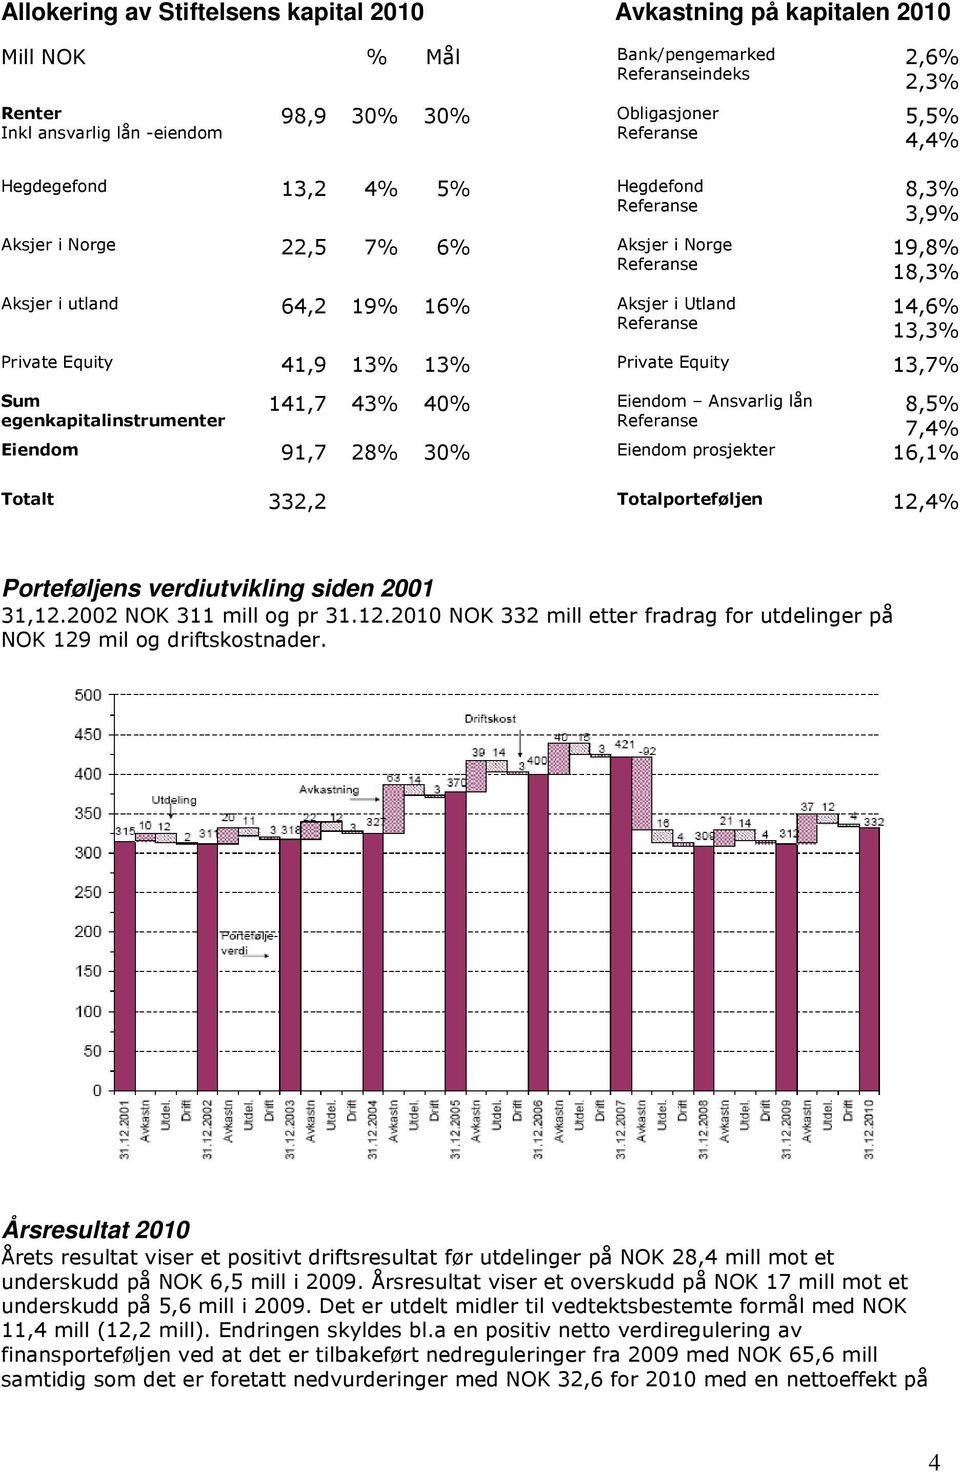 43% 40% Eiendom Ansvarlig lån 8,5% egenkapitalinstrumenter 7,4% Eiendom 91,7 28% 30% Eiendom prosjekter 16,1% Totalt 332,2 Totalporteføljen 12,4% Porteføljens verdiutvikling siden 2001 31,12.